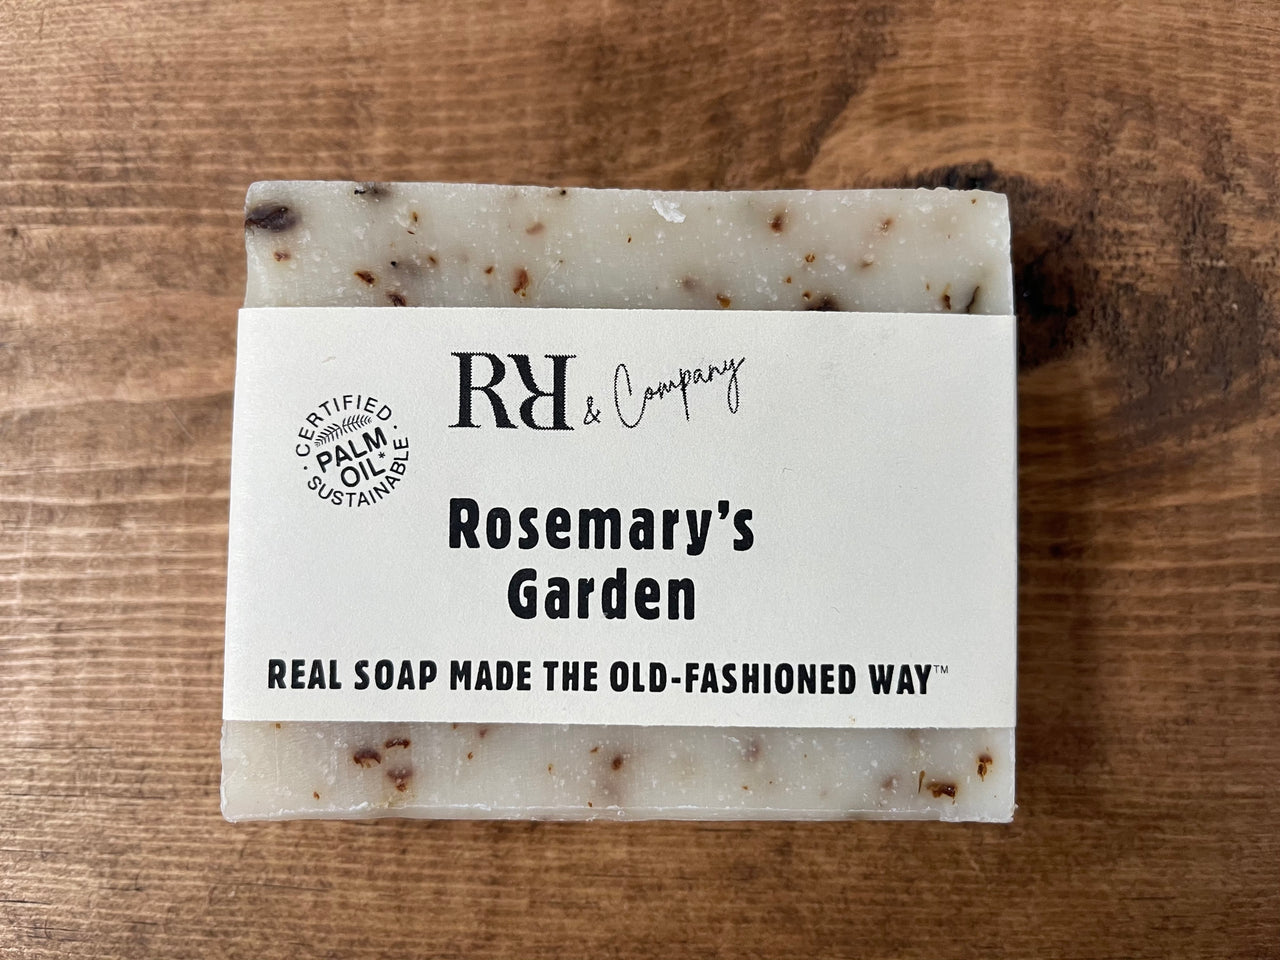 Rosemary's Garden Soap - RR & CO